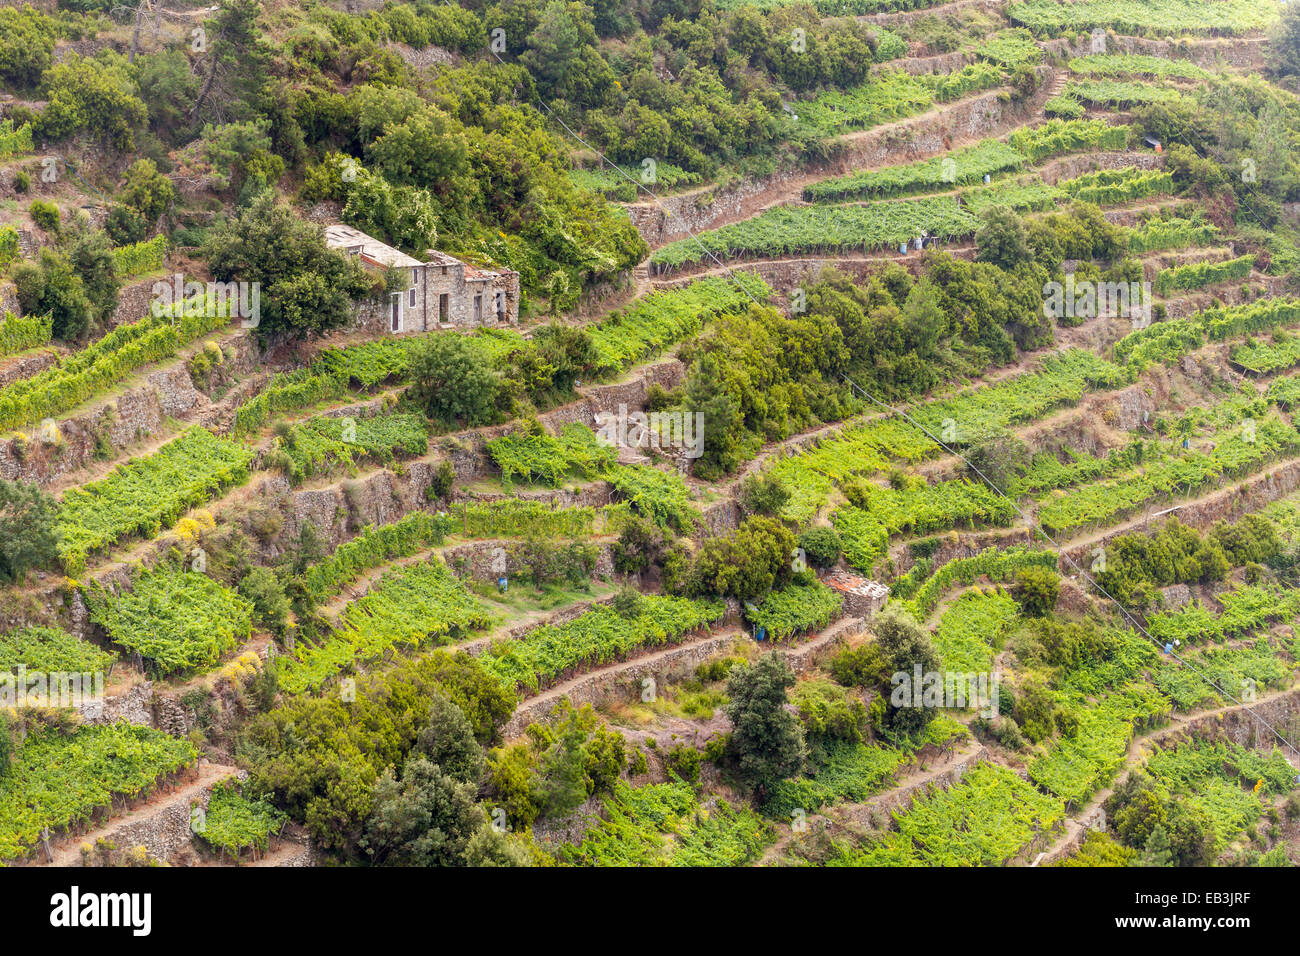 Vignobles en terrasses dans la région de Cinque Terre, Ligurie, Italie. L'UNESCO a désigné la zone un site du patrimoine mondial en disant qu'il n'est qu'un cul Banque D'Images